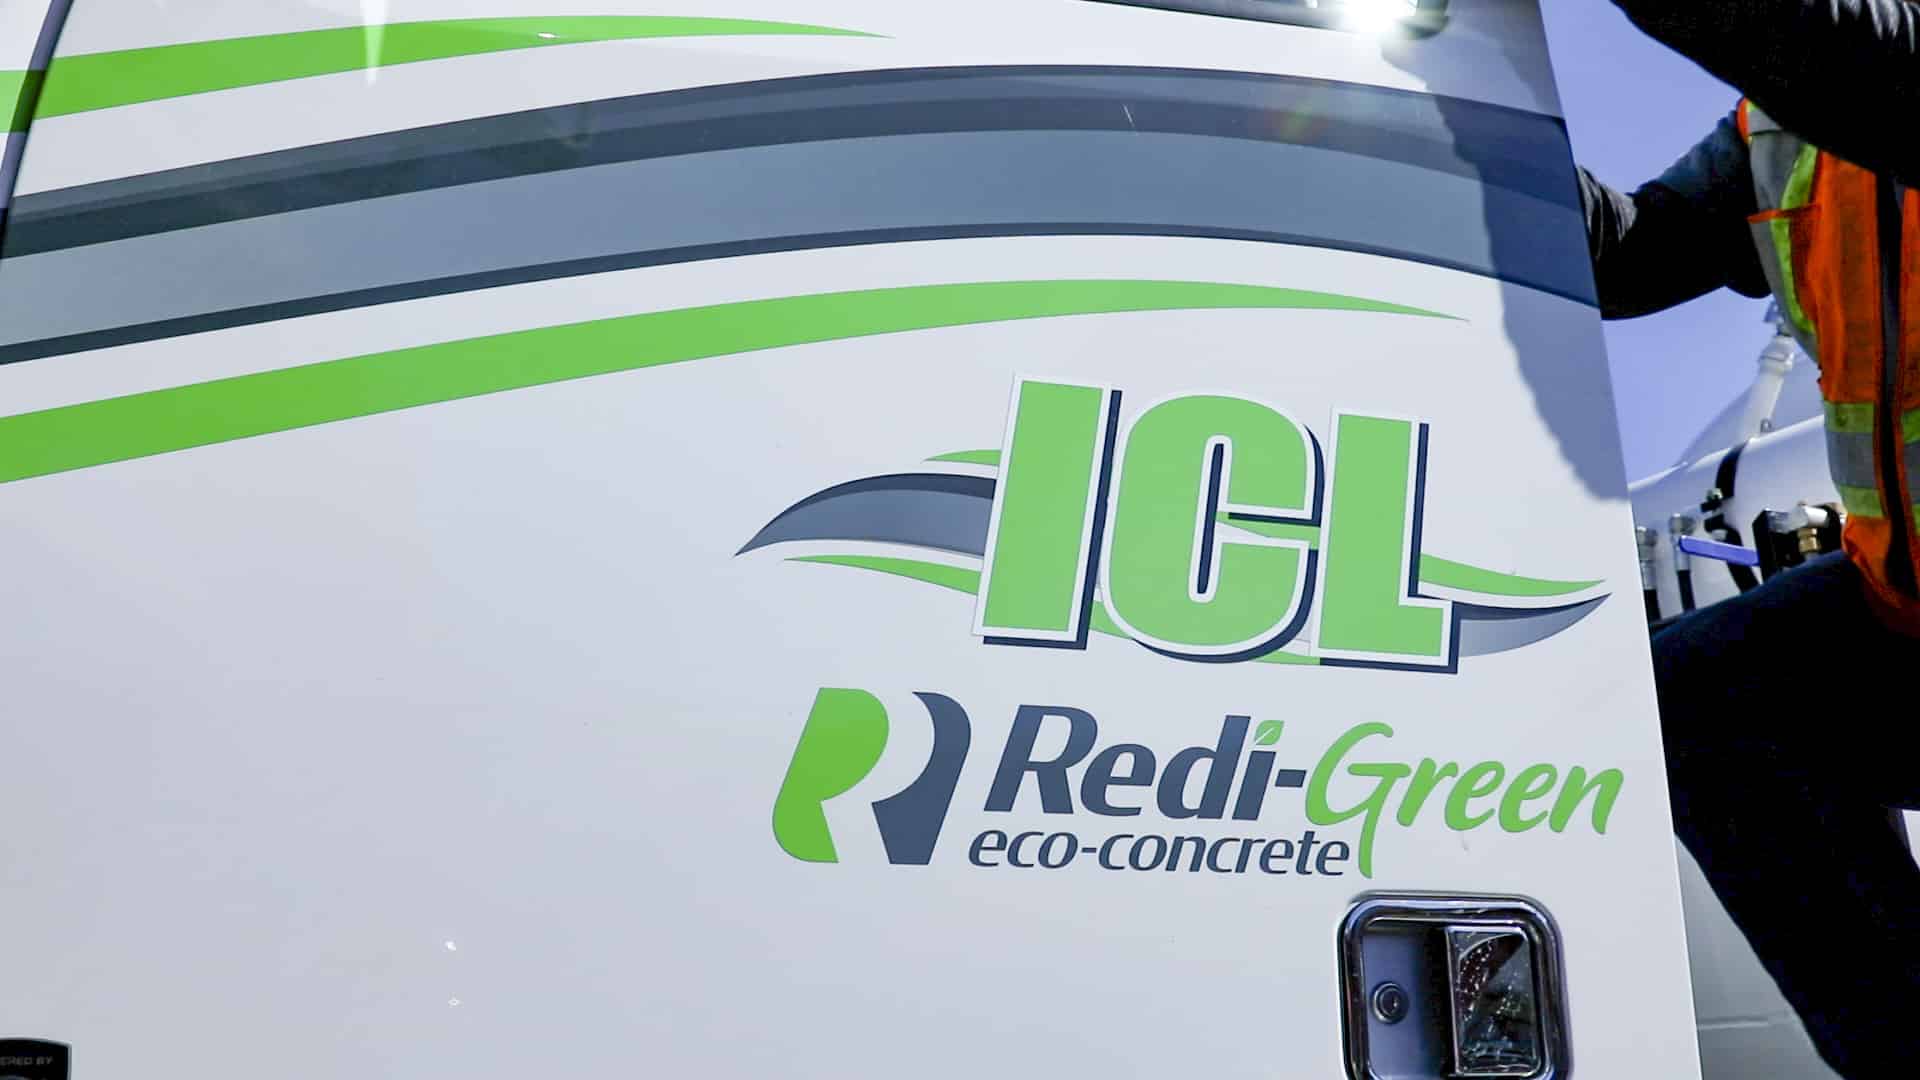 Redi-Green eco-concrete